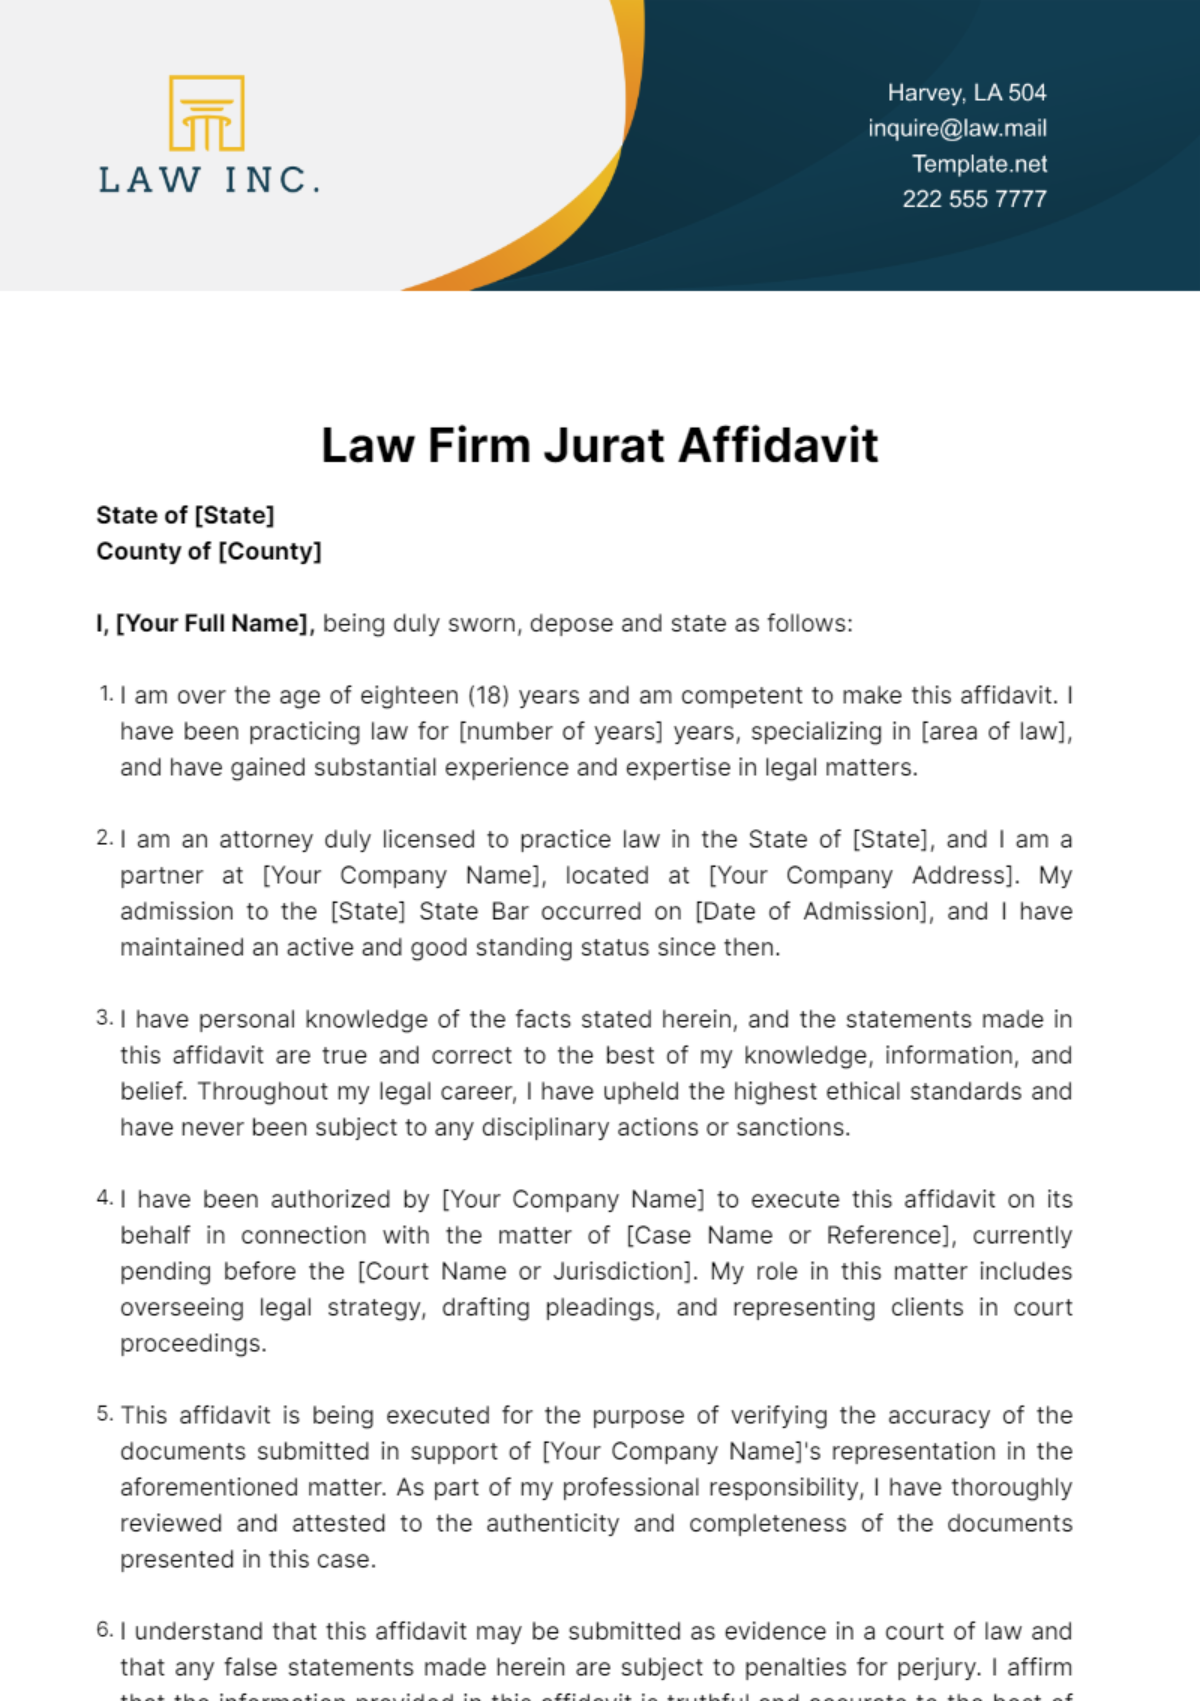 Free Law Firm Jurat Affidavit Template